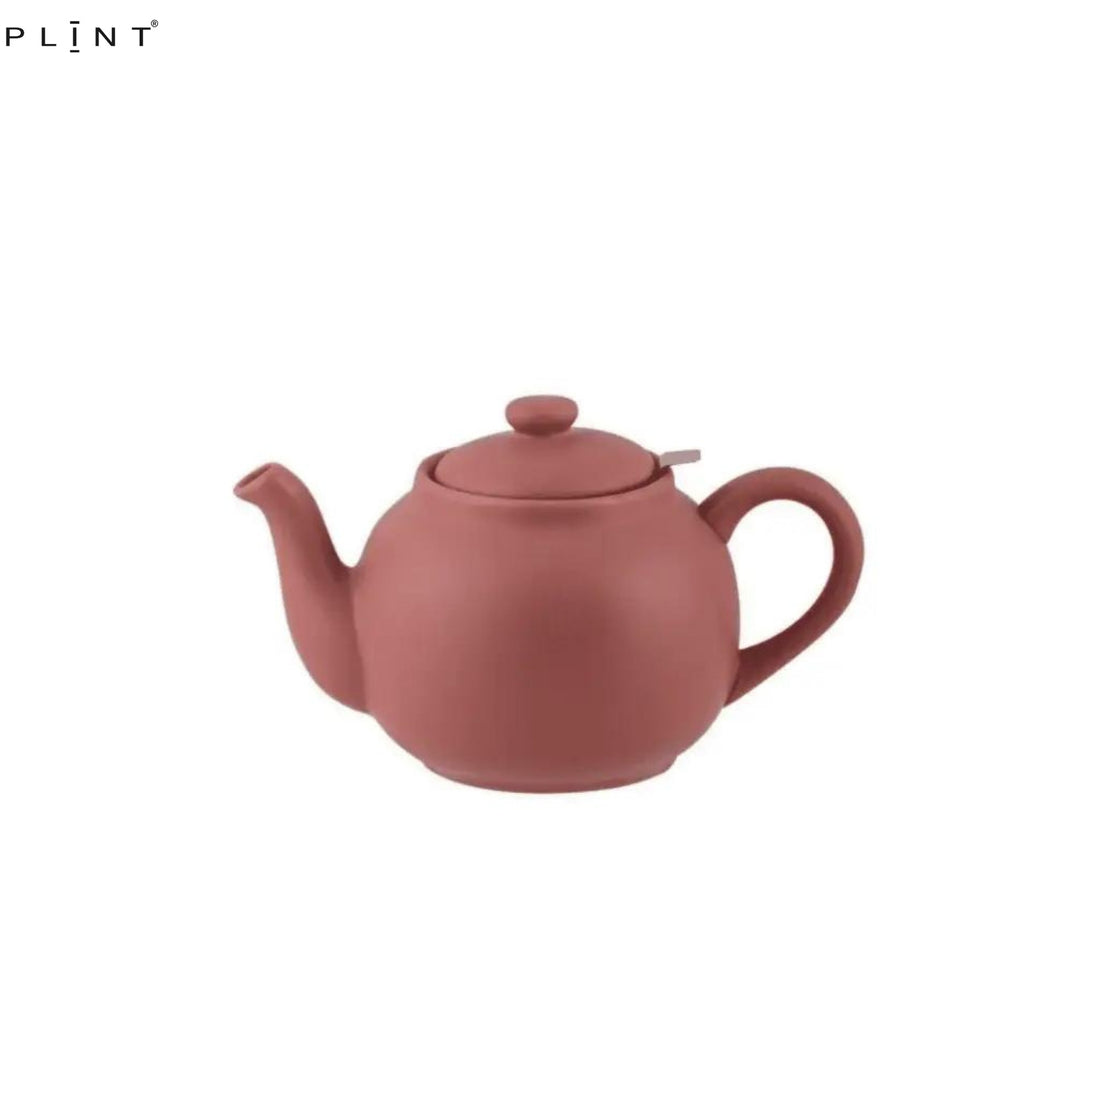 Plint Teekanne Terracotta Rot 0,9 L inklusive Sieb